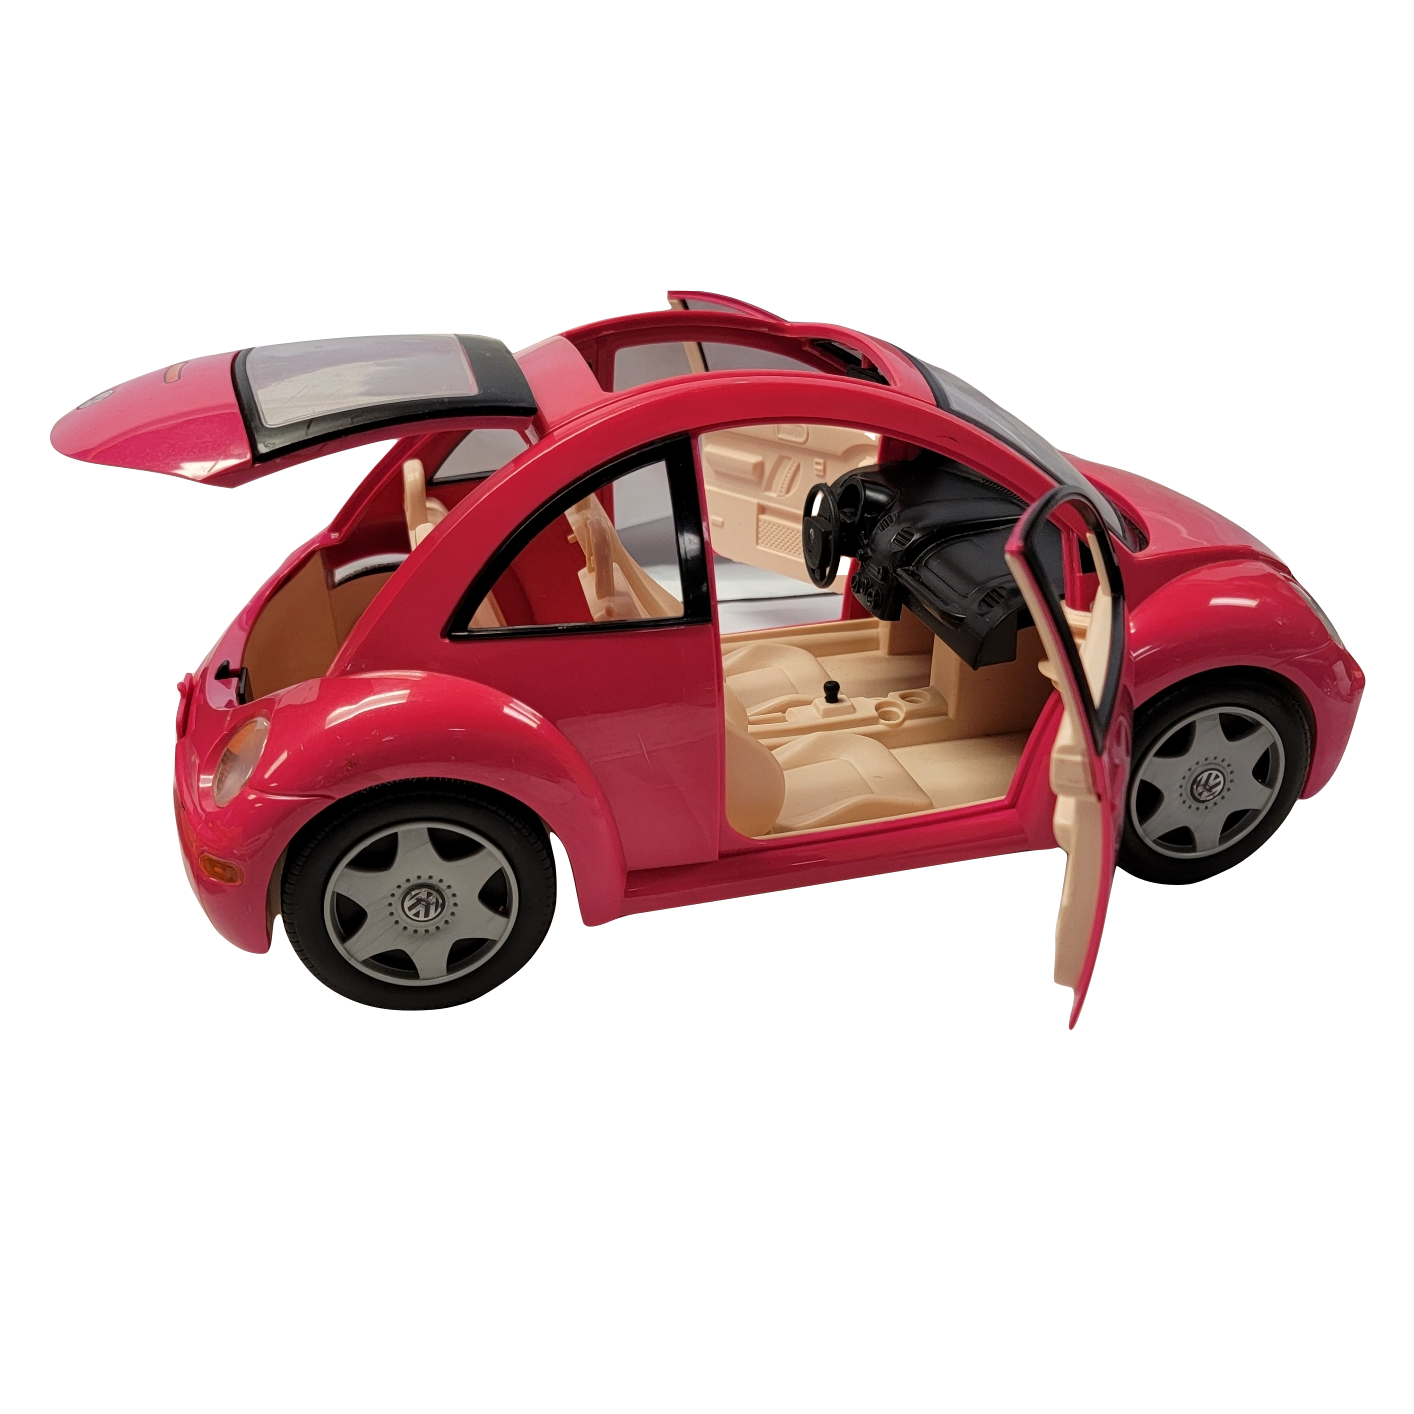 Groet in verlegenheid gebracht roddel Mattel Volkswagen Beetle Barbie Car | Left Behind LLC